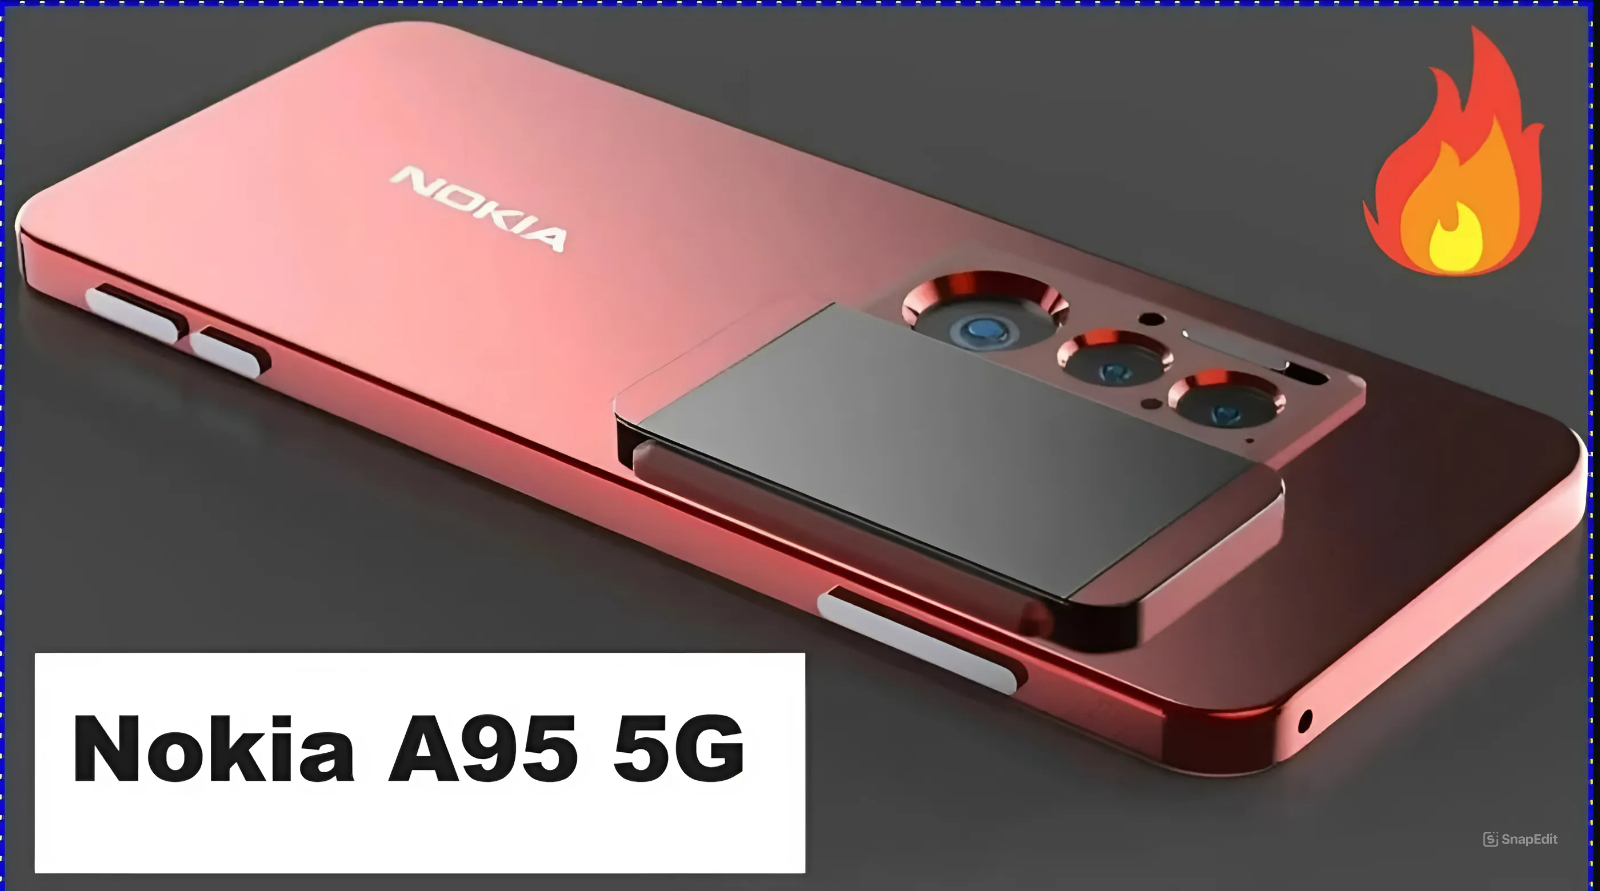 Nokia A95 5G smartphone